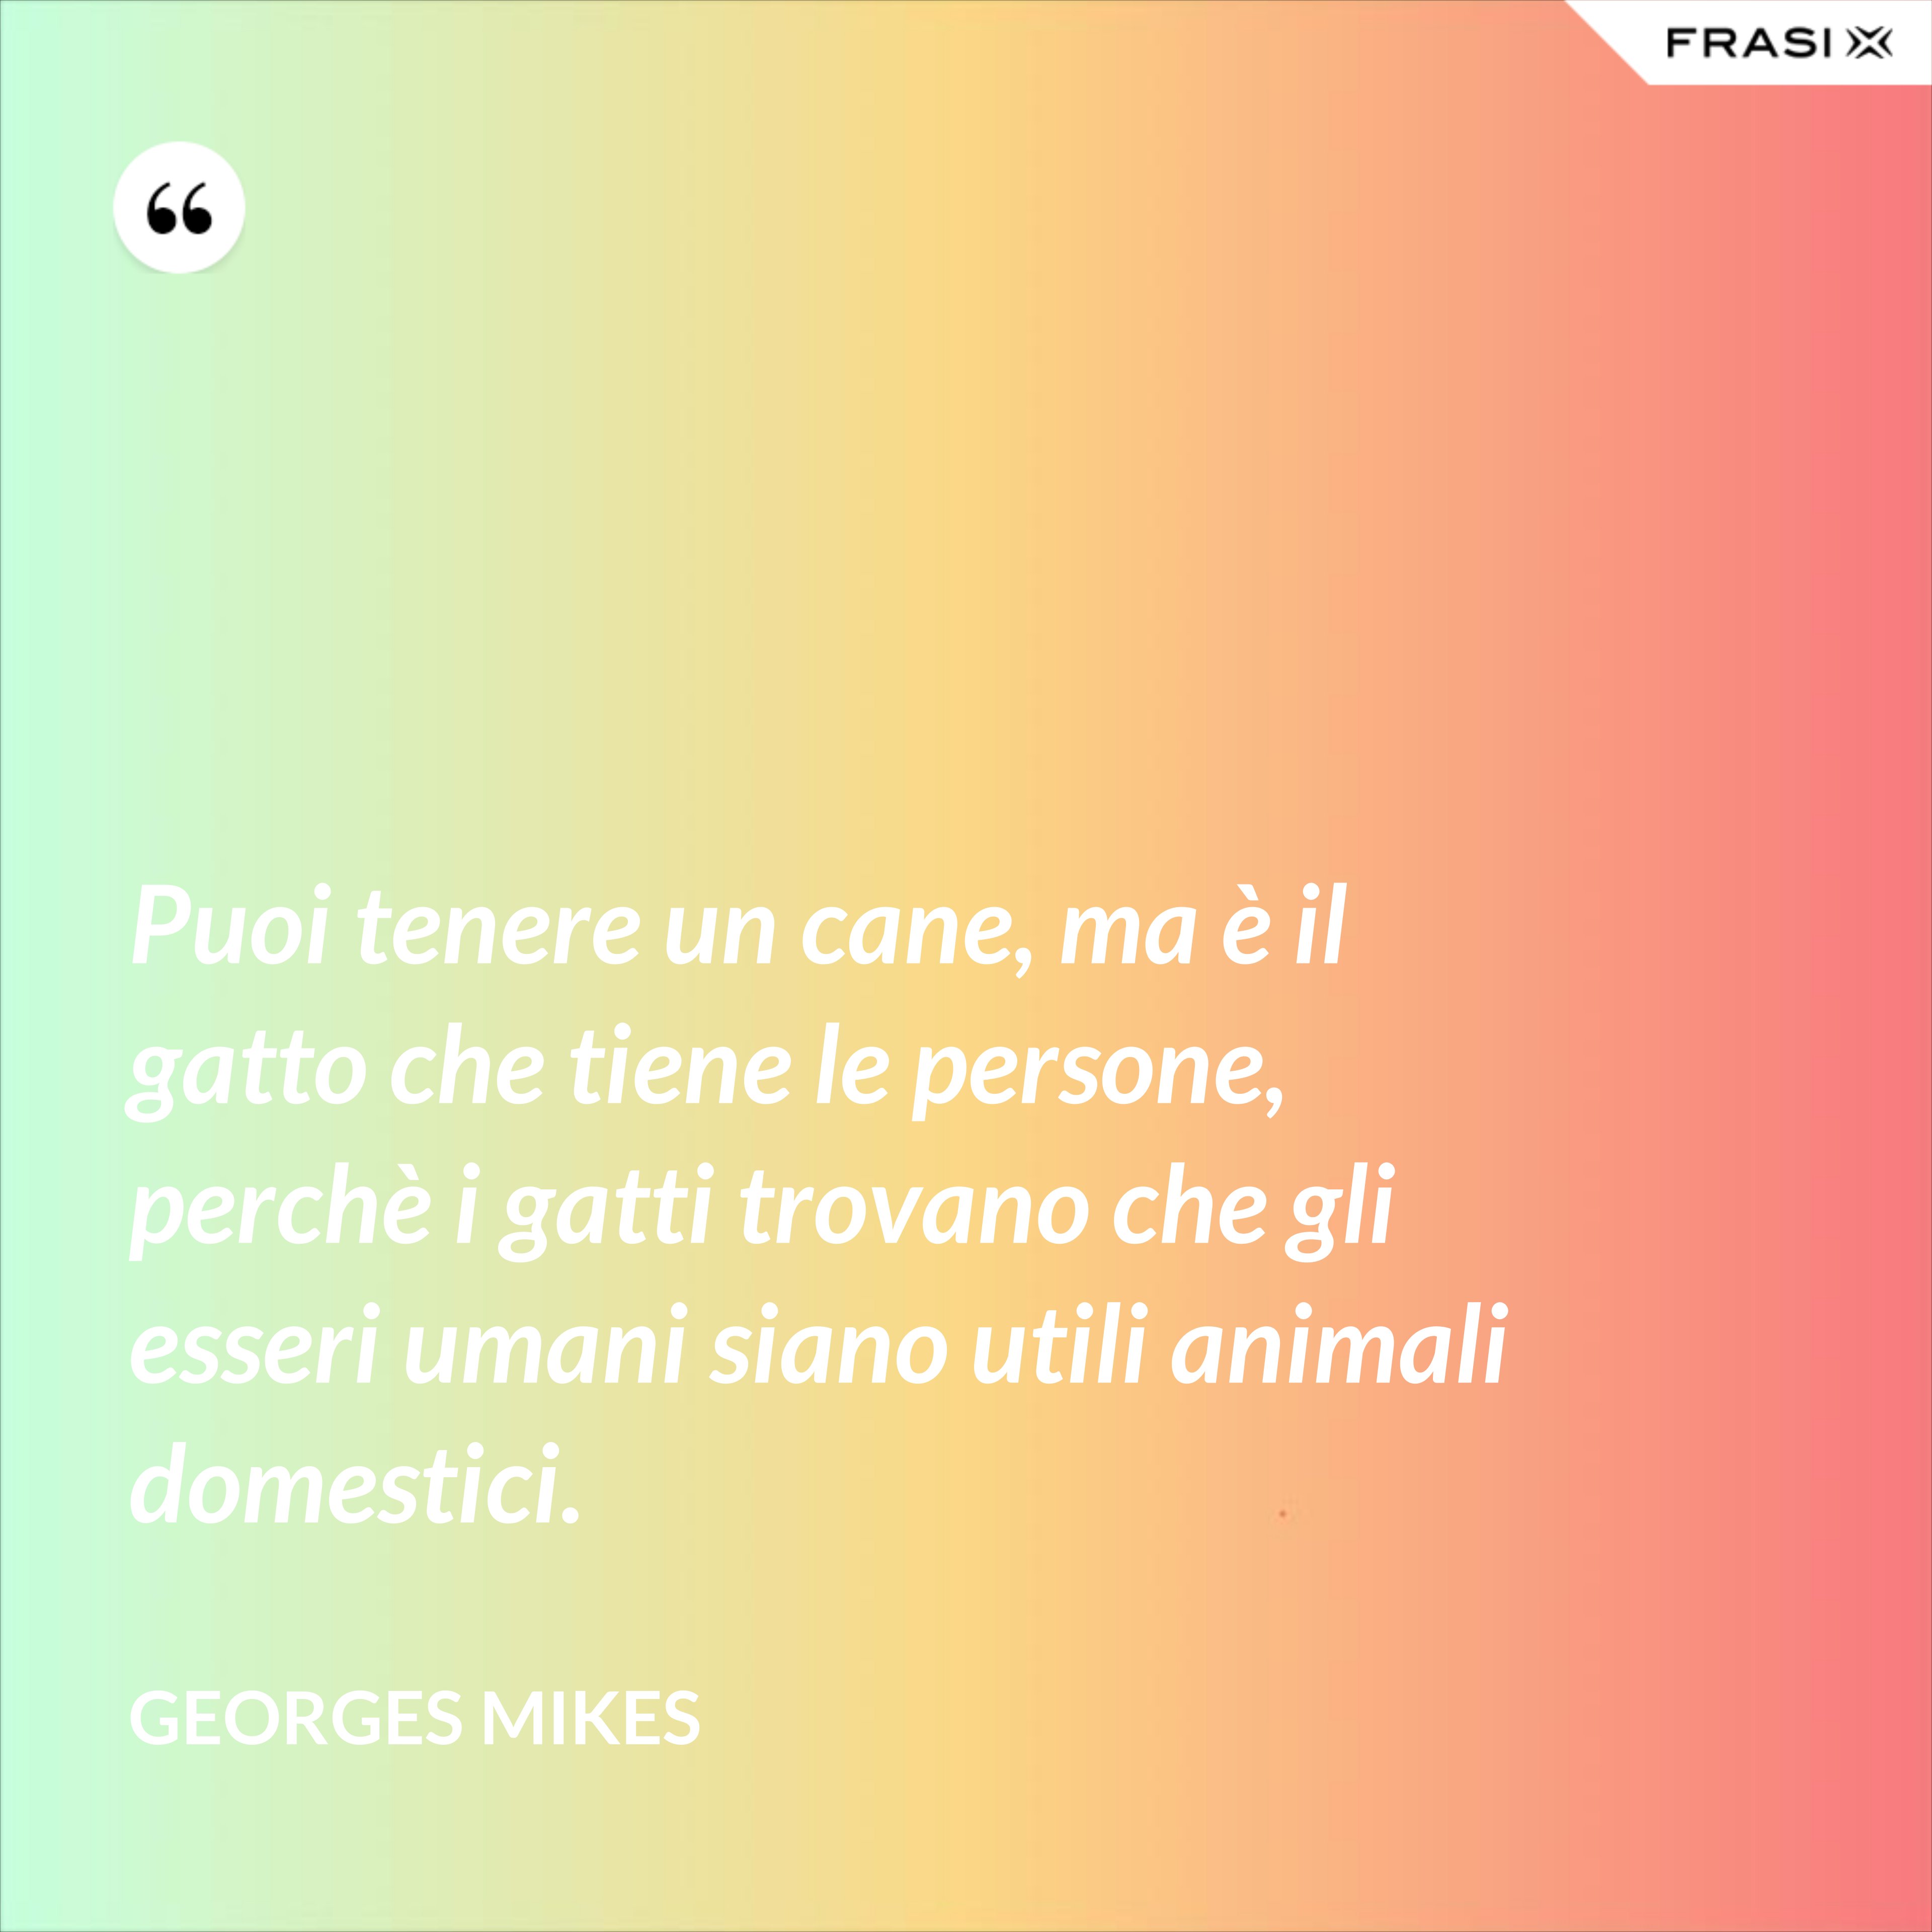 Puoi tenere un cane, ma è il gatto che tiene le persone, perchè i gatti trovano che gli esseri umani siano utili animali domestici. - Georges Mikes